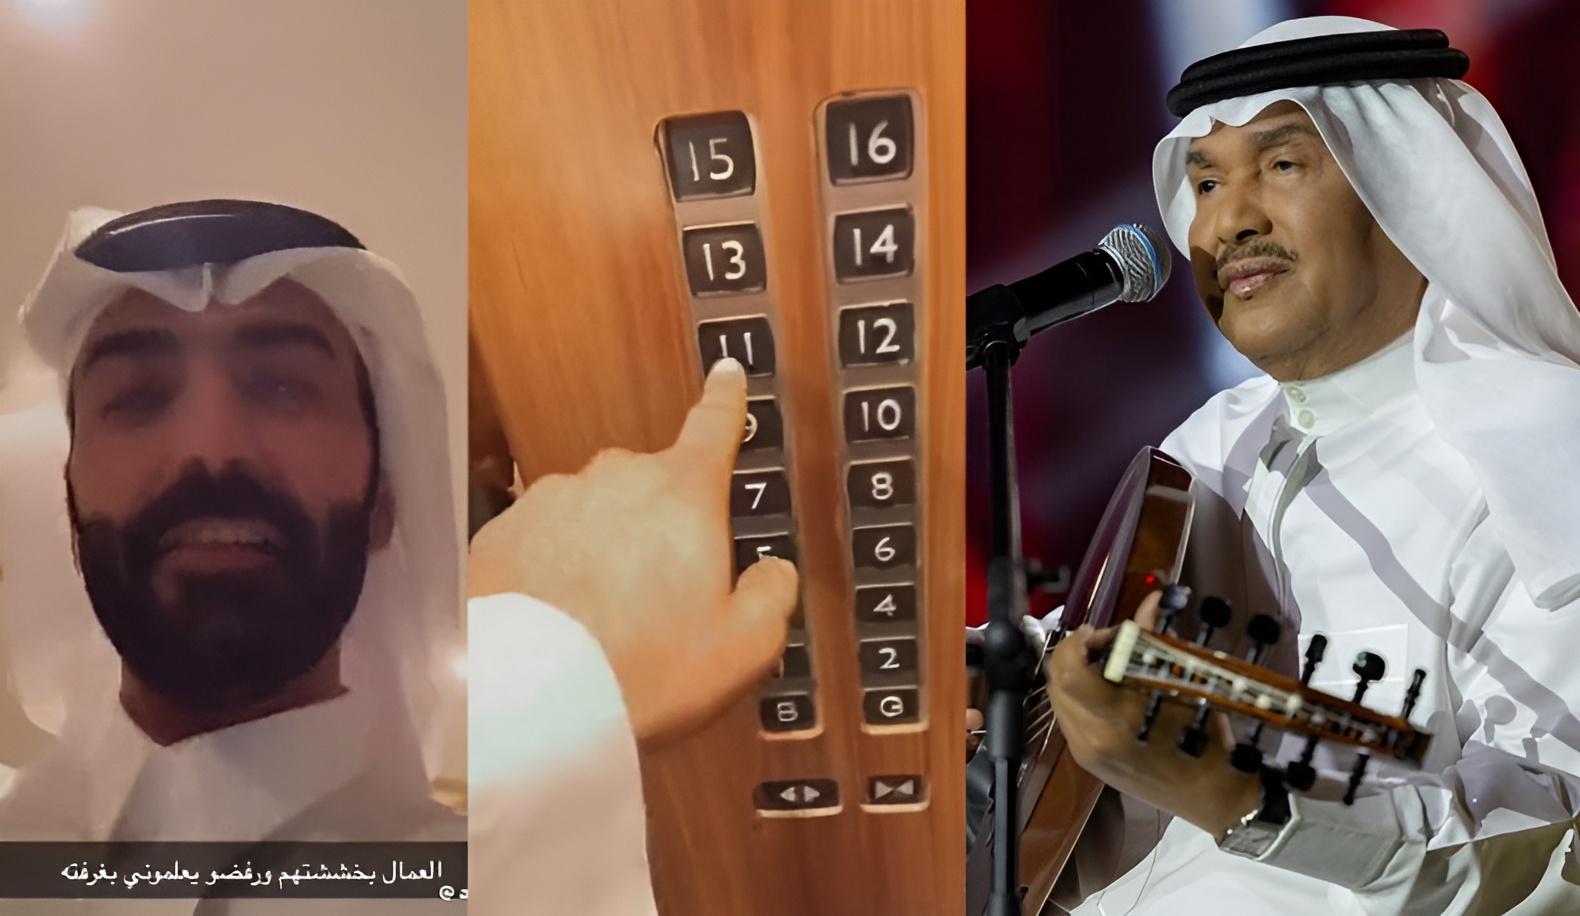 محمد عبده في خطر.. عصابة من 5 أشخاص يصلون غرفته والشرطة تستنفر (فيديو)